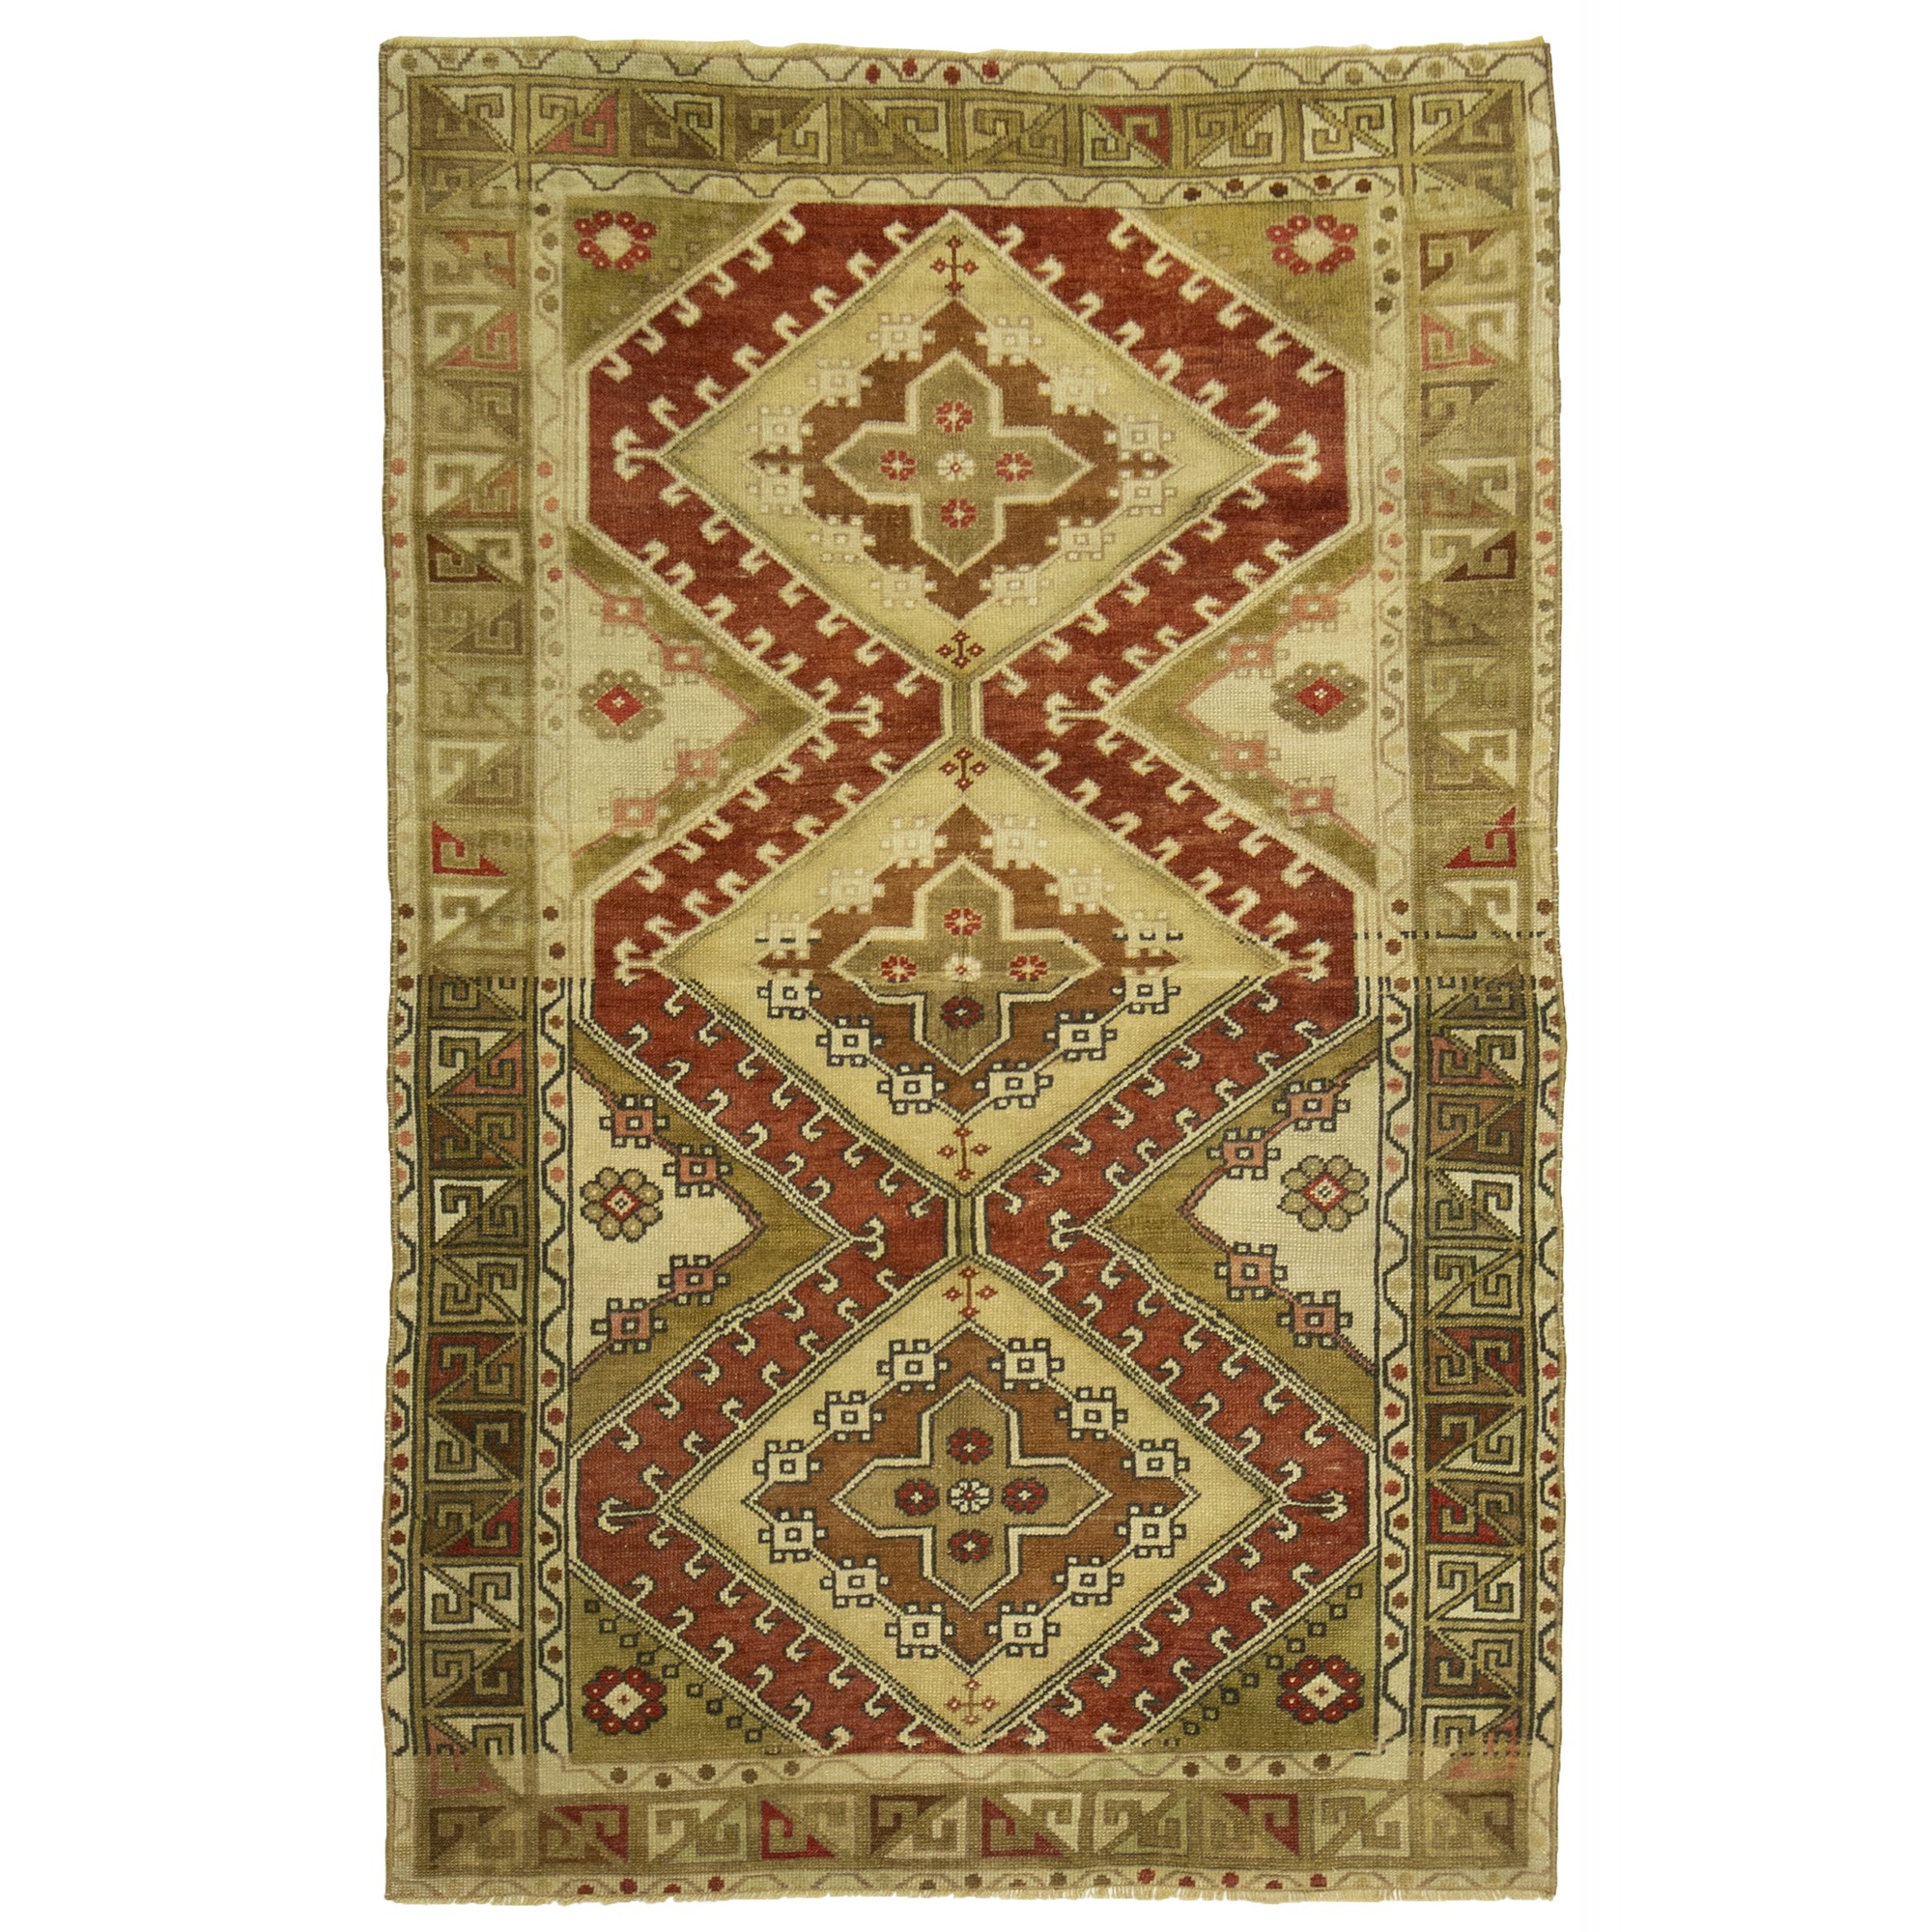 3531  107,175 - Turkish Carpet Rug 